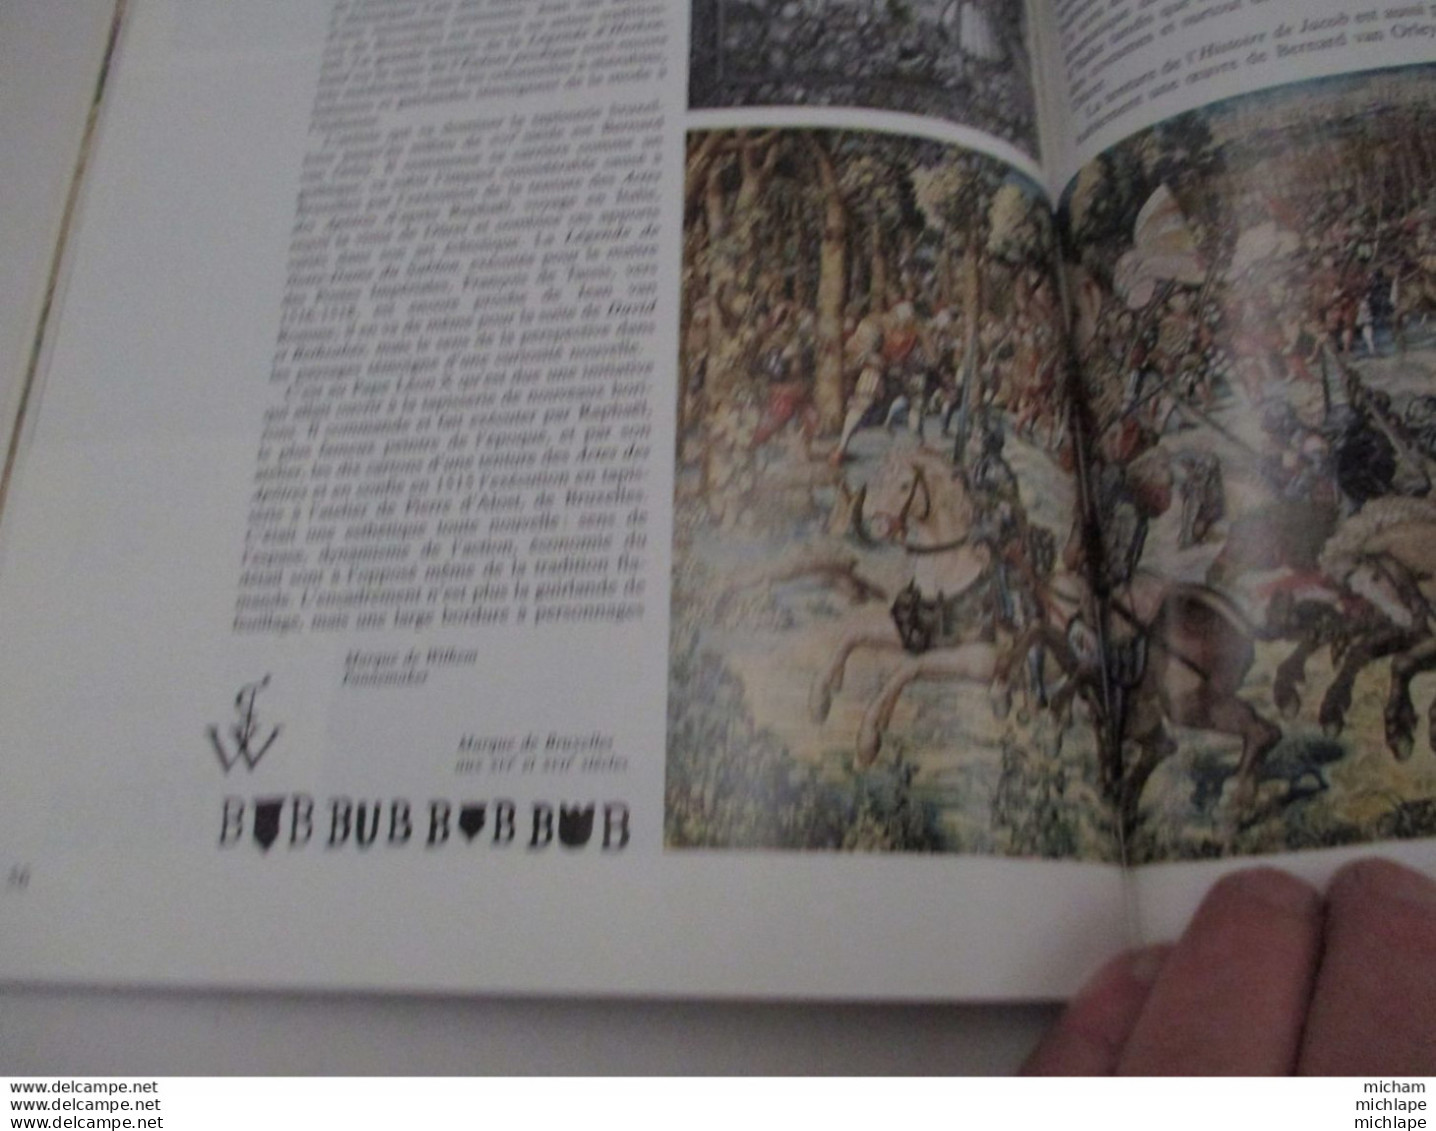 antiquité  et objets d'art - tapisserie  - 1990 - 79 pages  -edit. fabri - format  22 x 29 -trés bon état